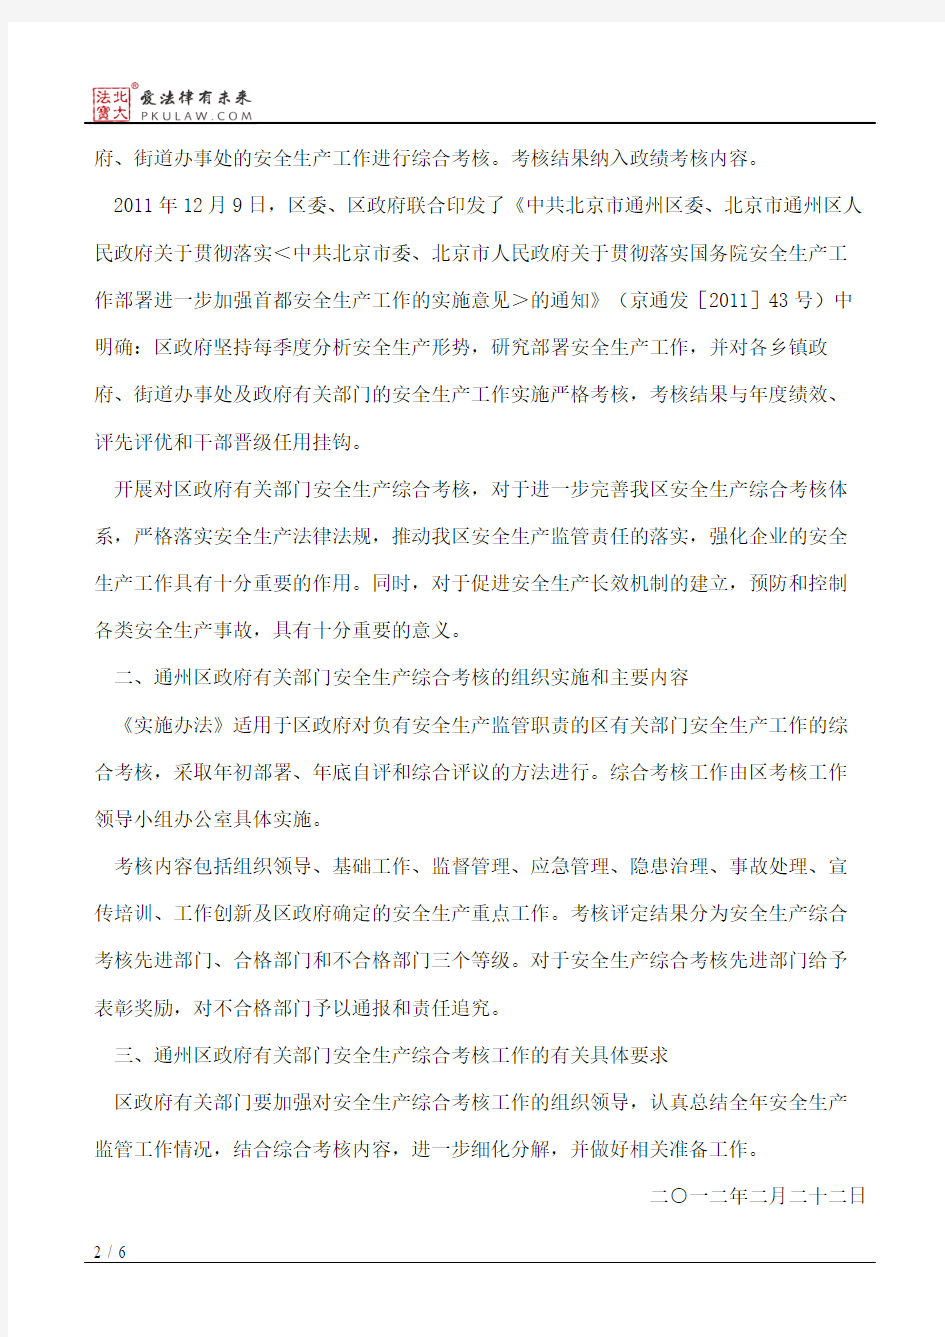 北京市通州区人民政府关于印发通州区政府有关部门安全生产综合考